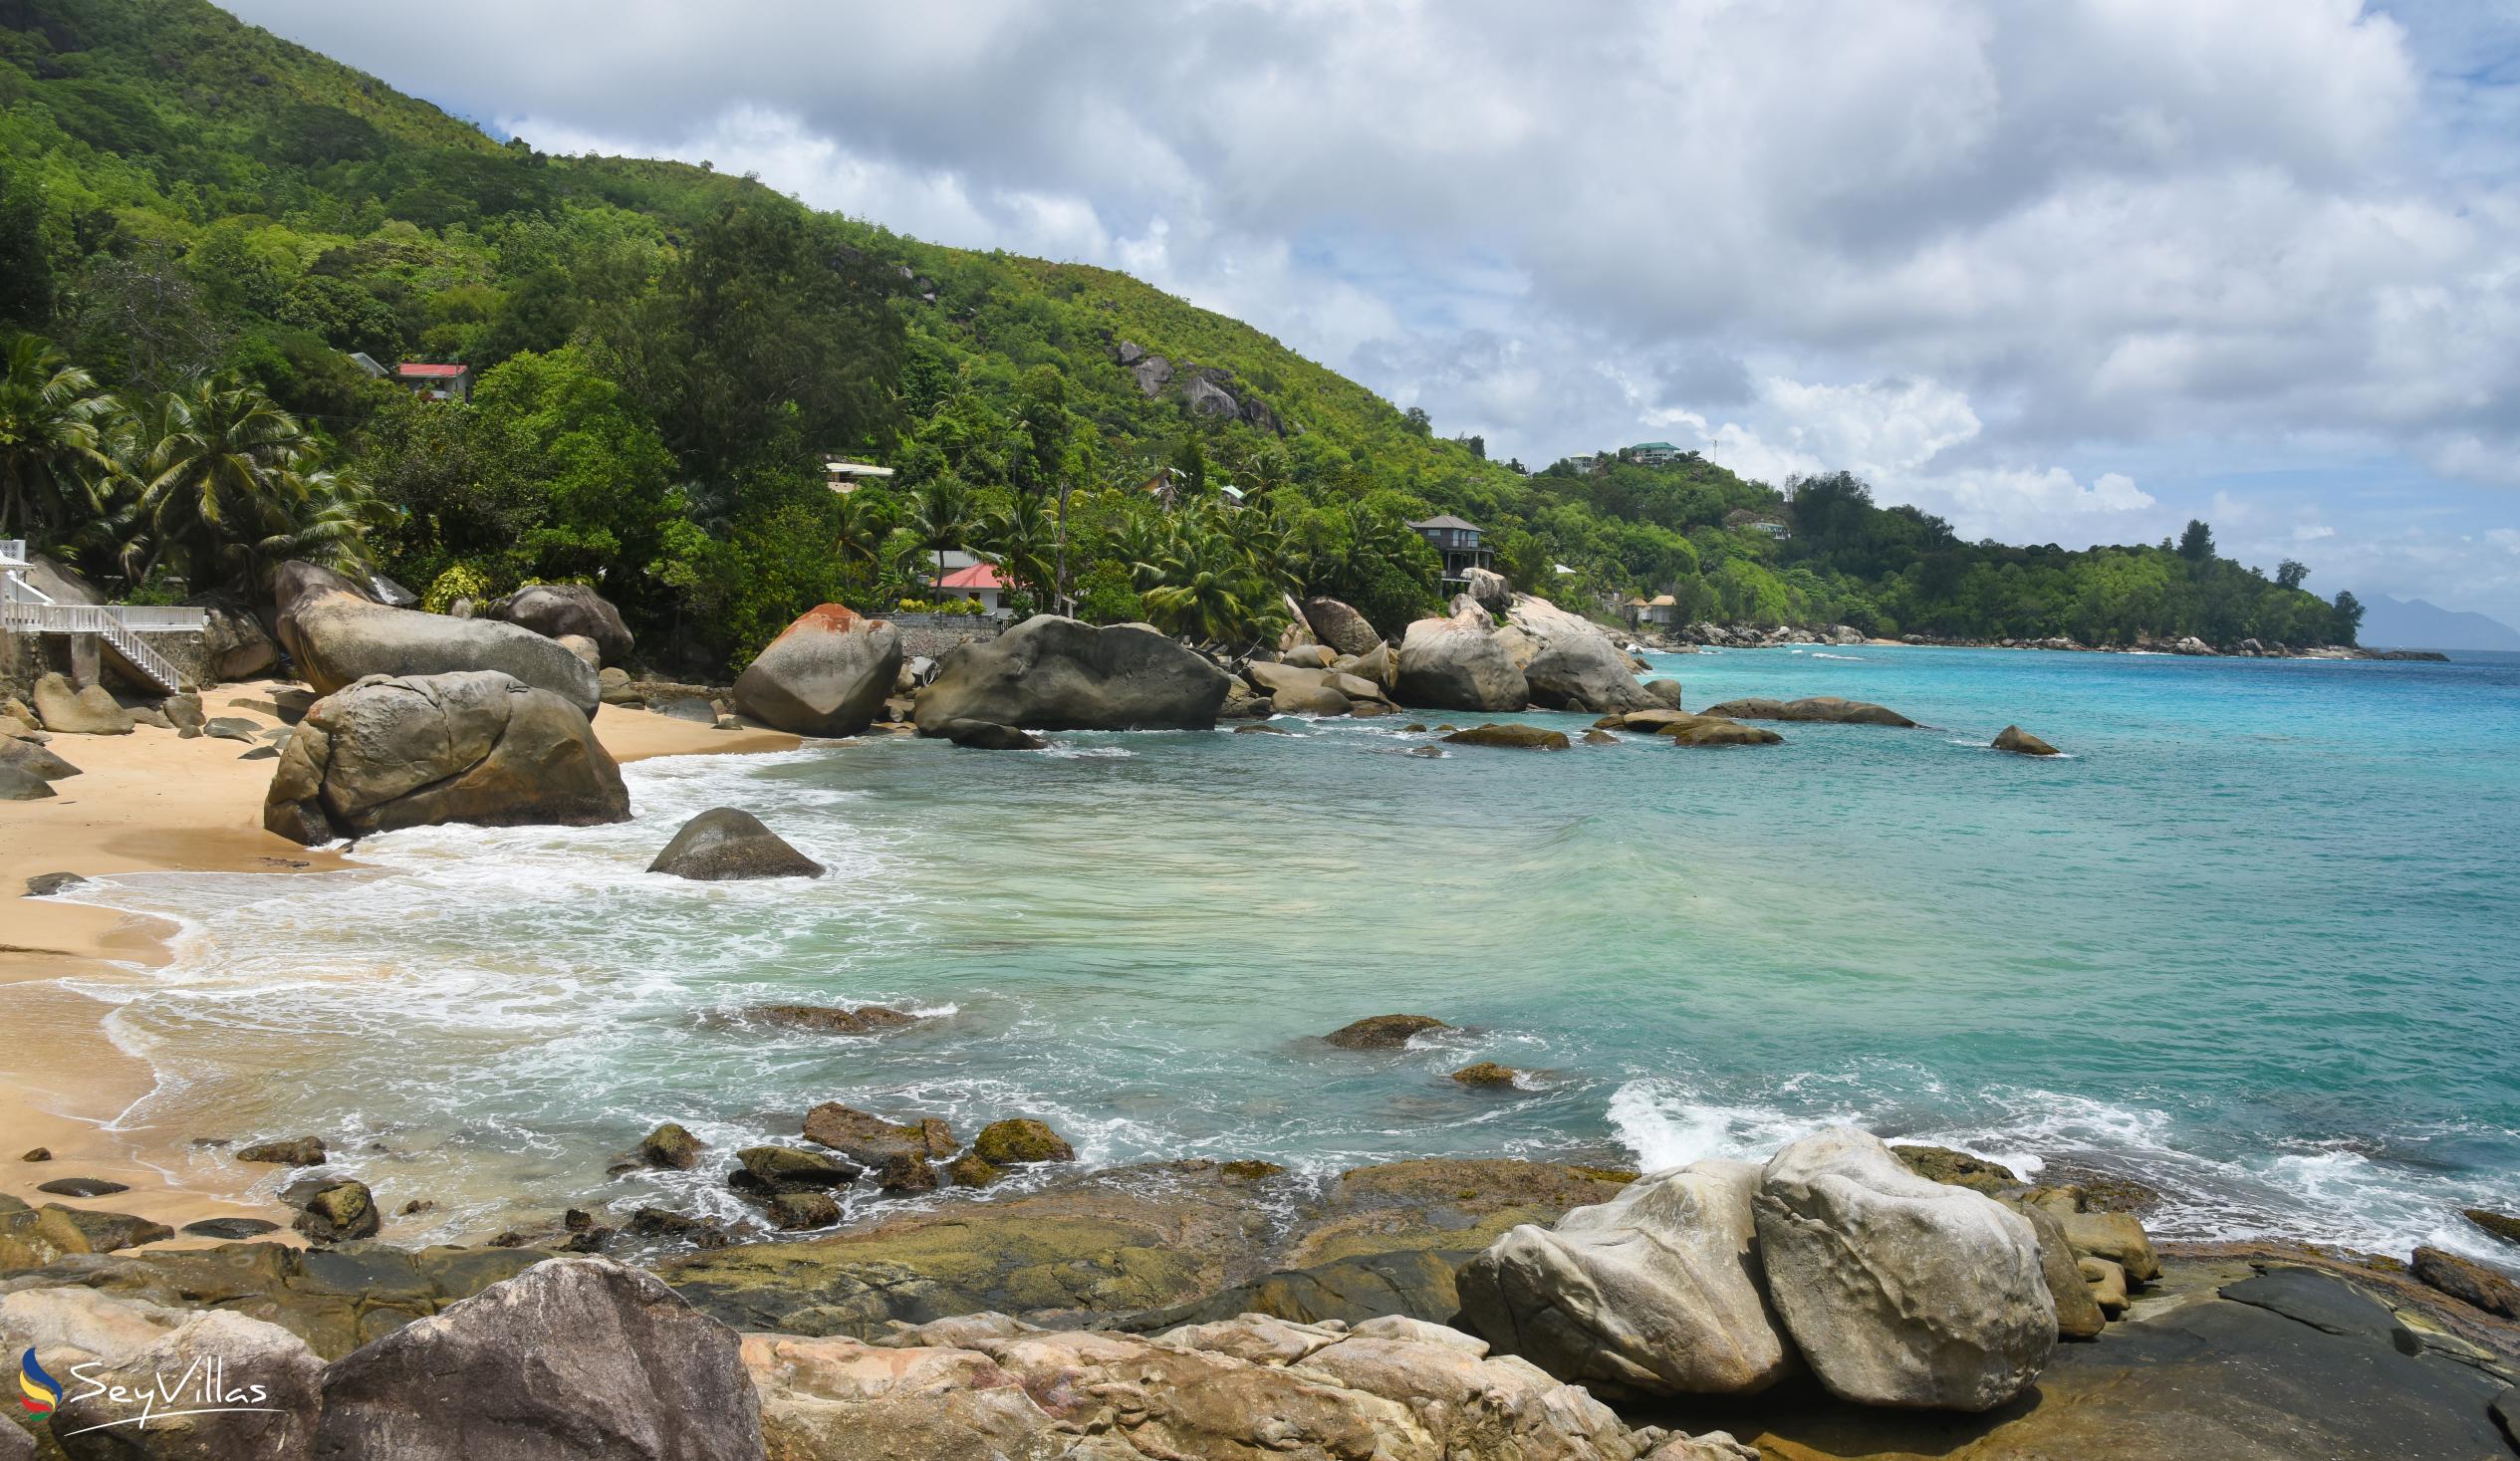 Photo 7: Anse Machabée - Mahé (Seychelles)